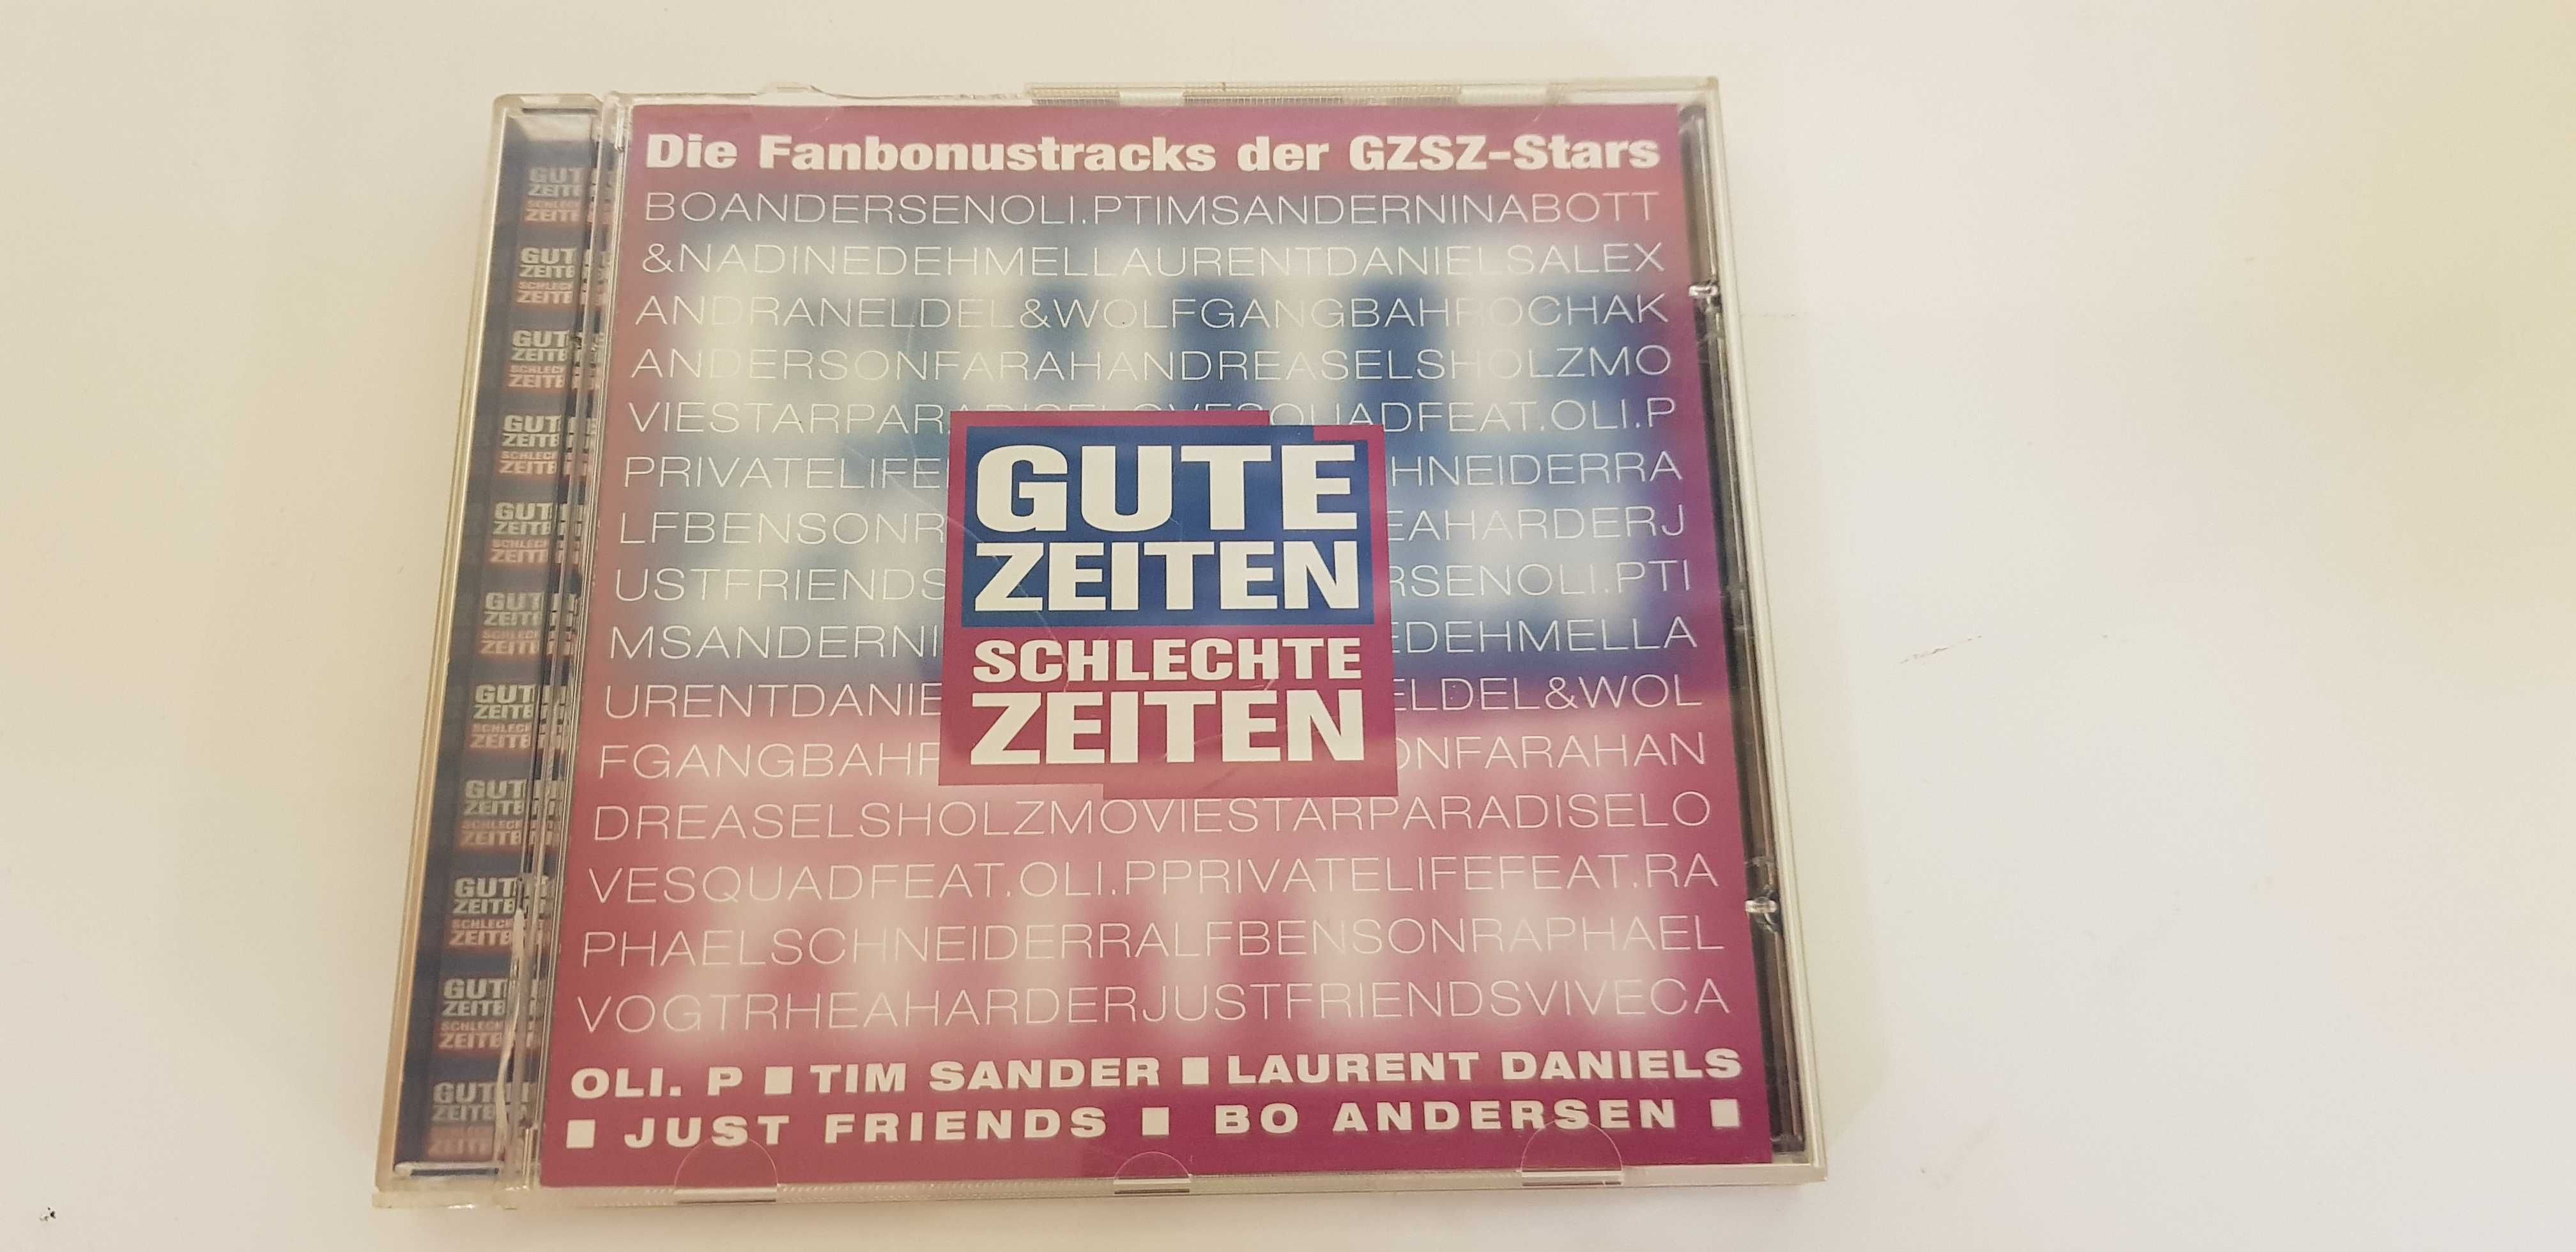 Gute Zeiten Schlechte Zeiten płyta CD przeboje